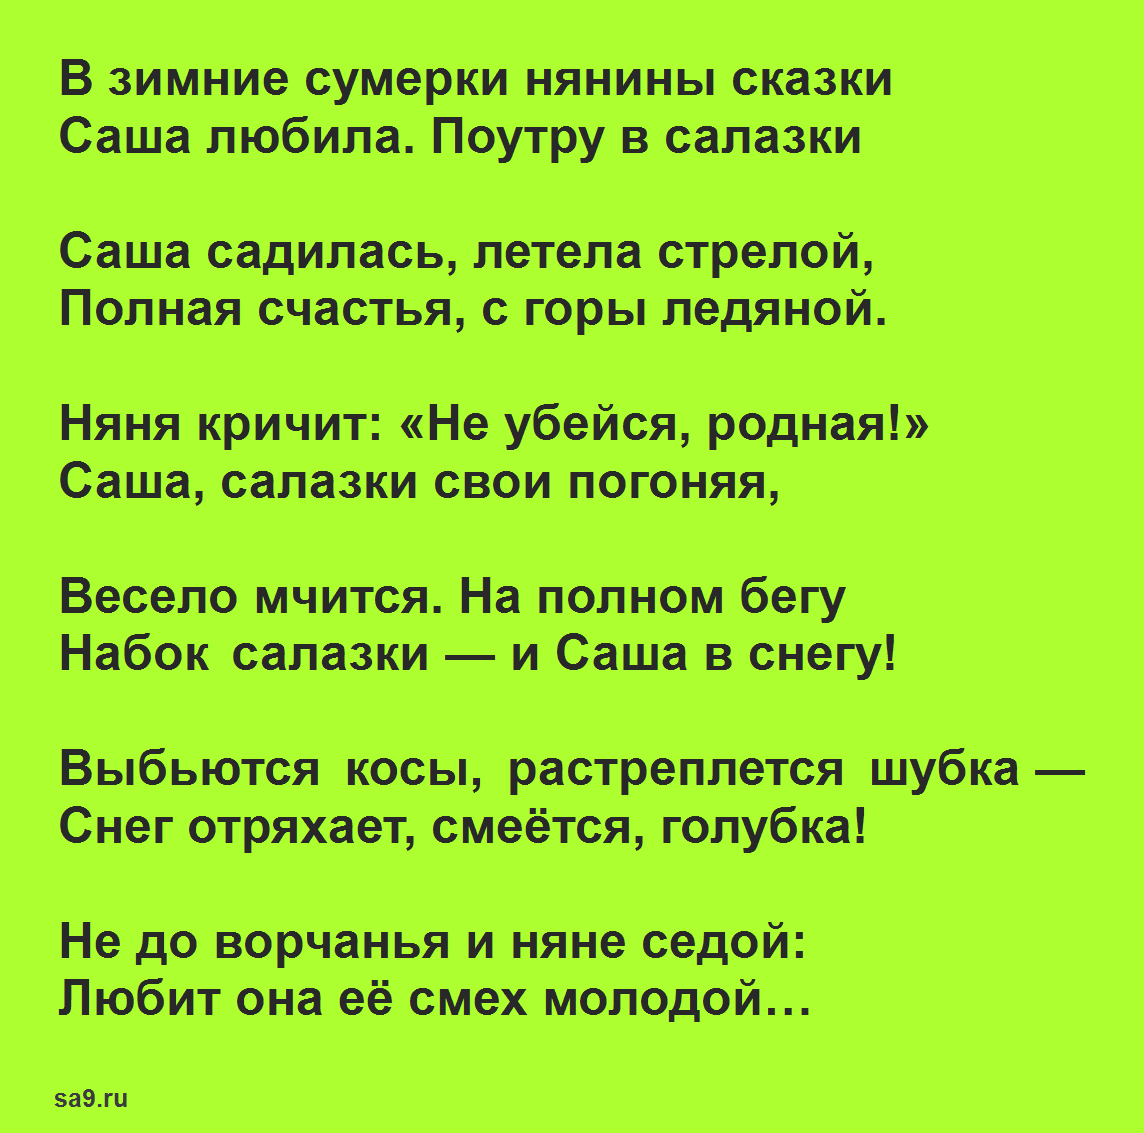 Поэт Некрасов стихи для 4 класса - Зимние сумерки (отрывок из Саша)